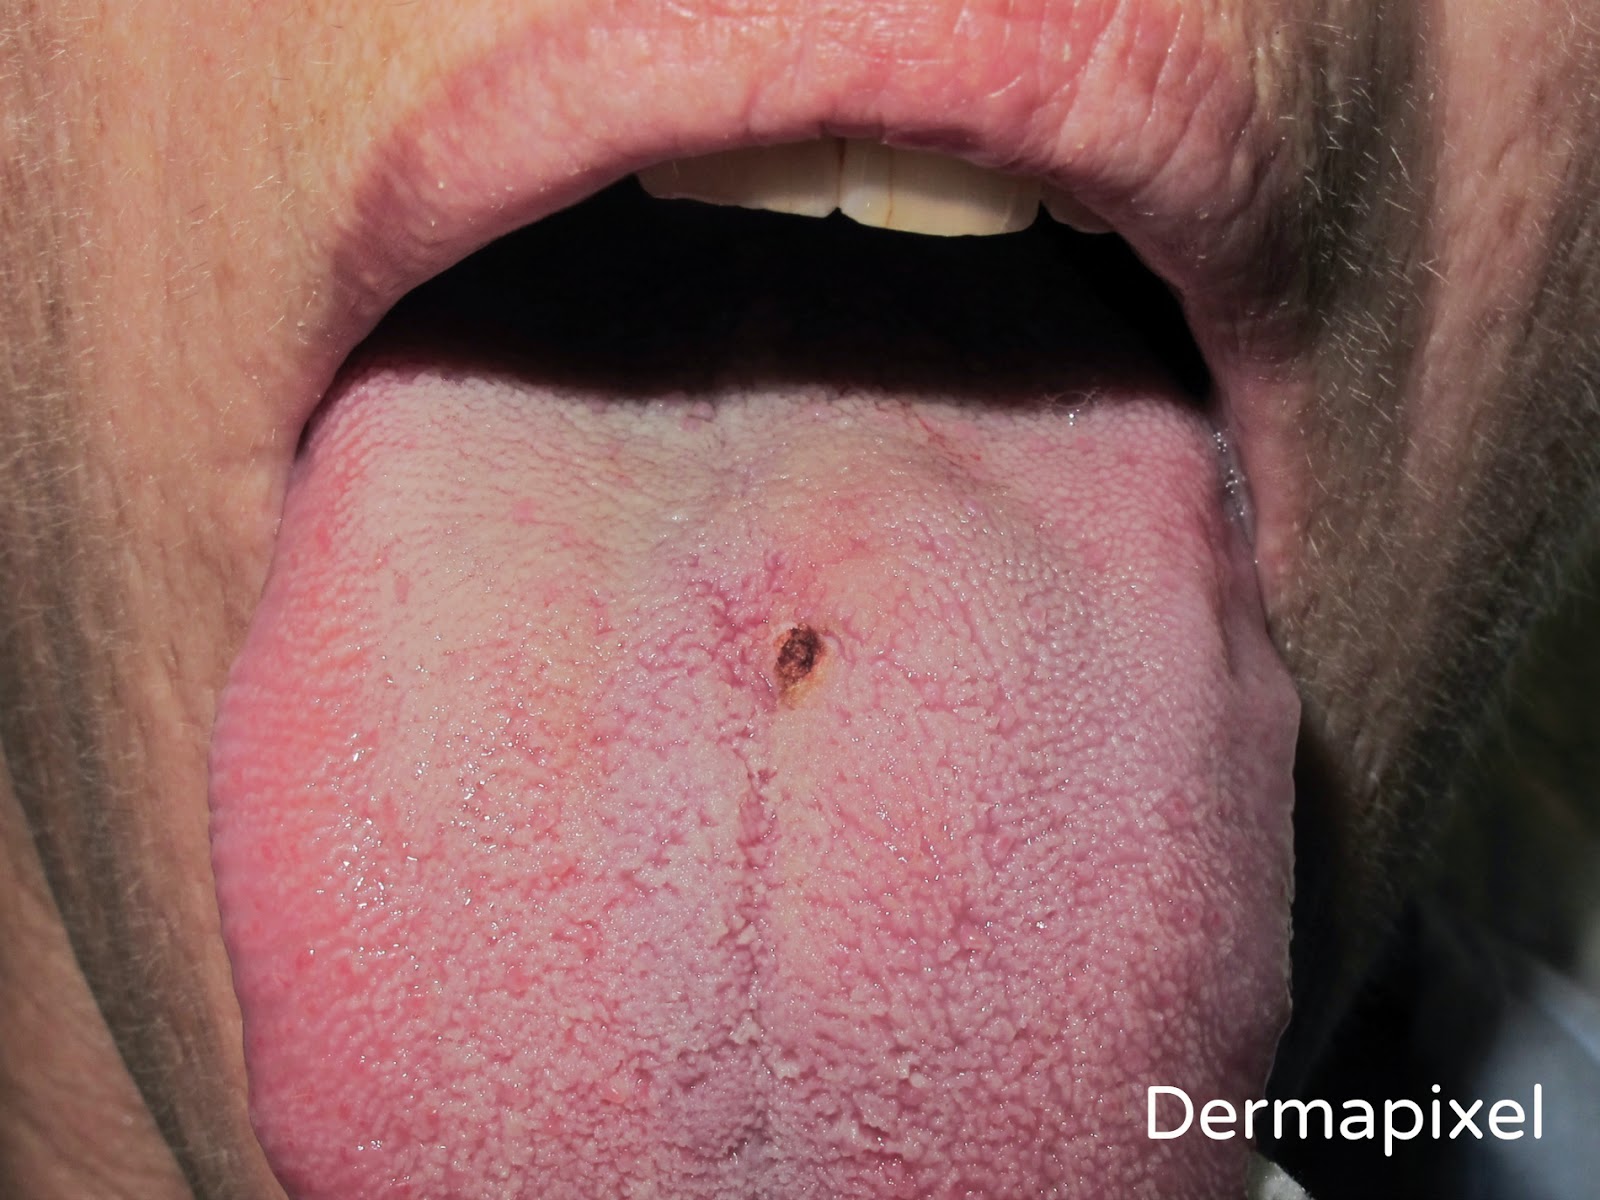 Lesiones de papiloma en la boca Papiloma verrugoso boca